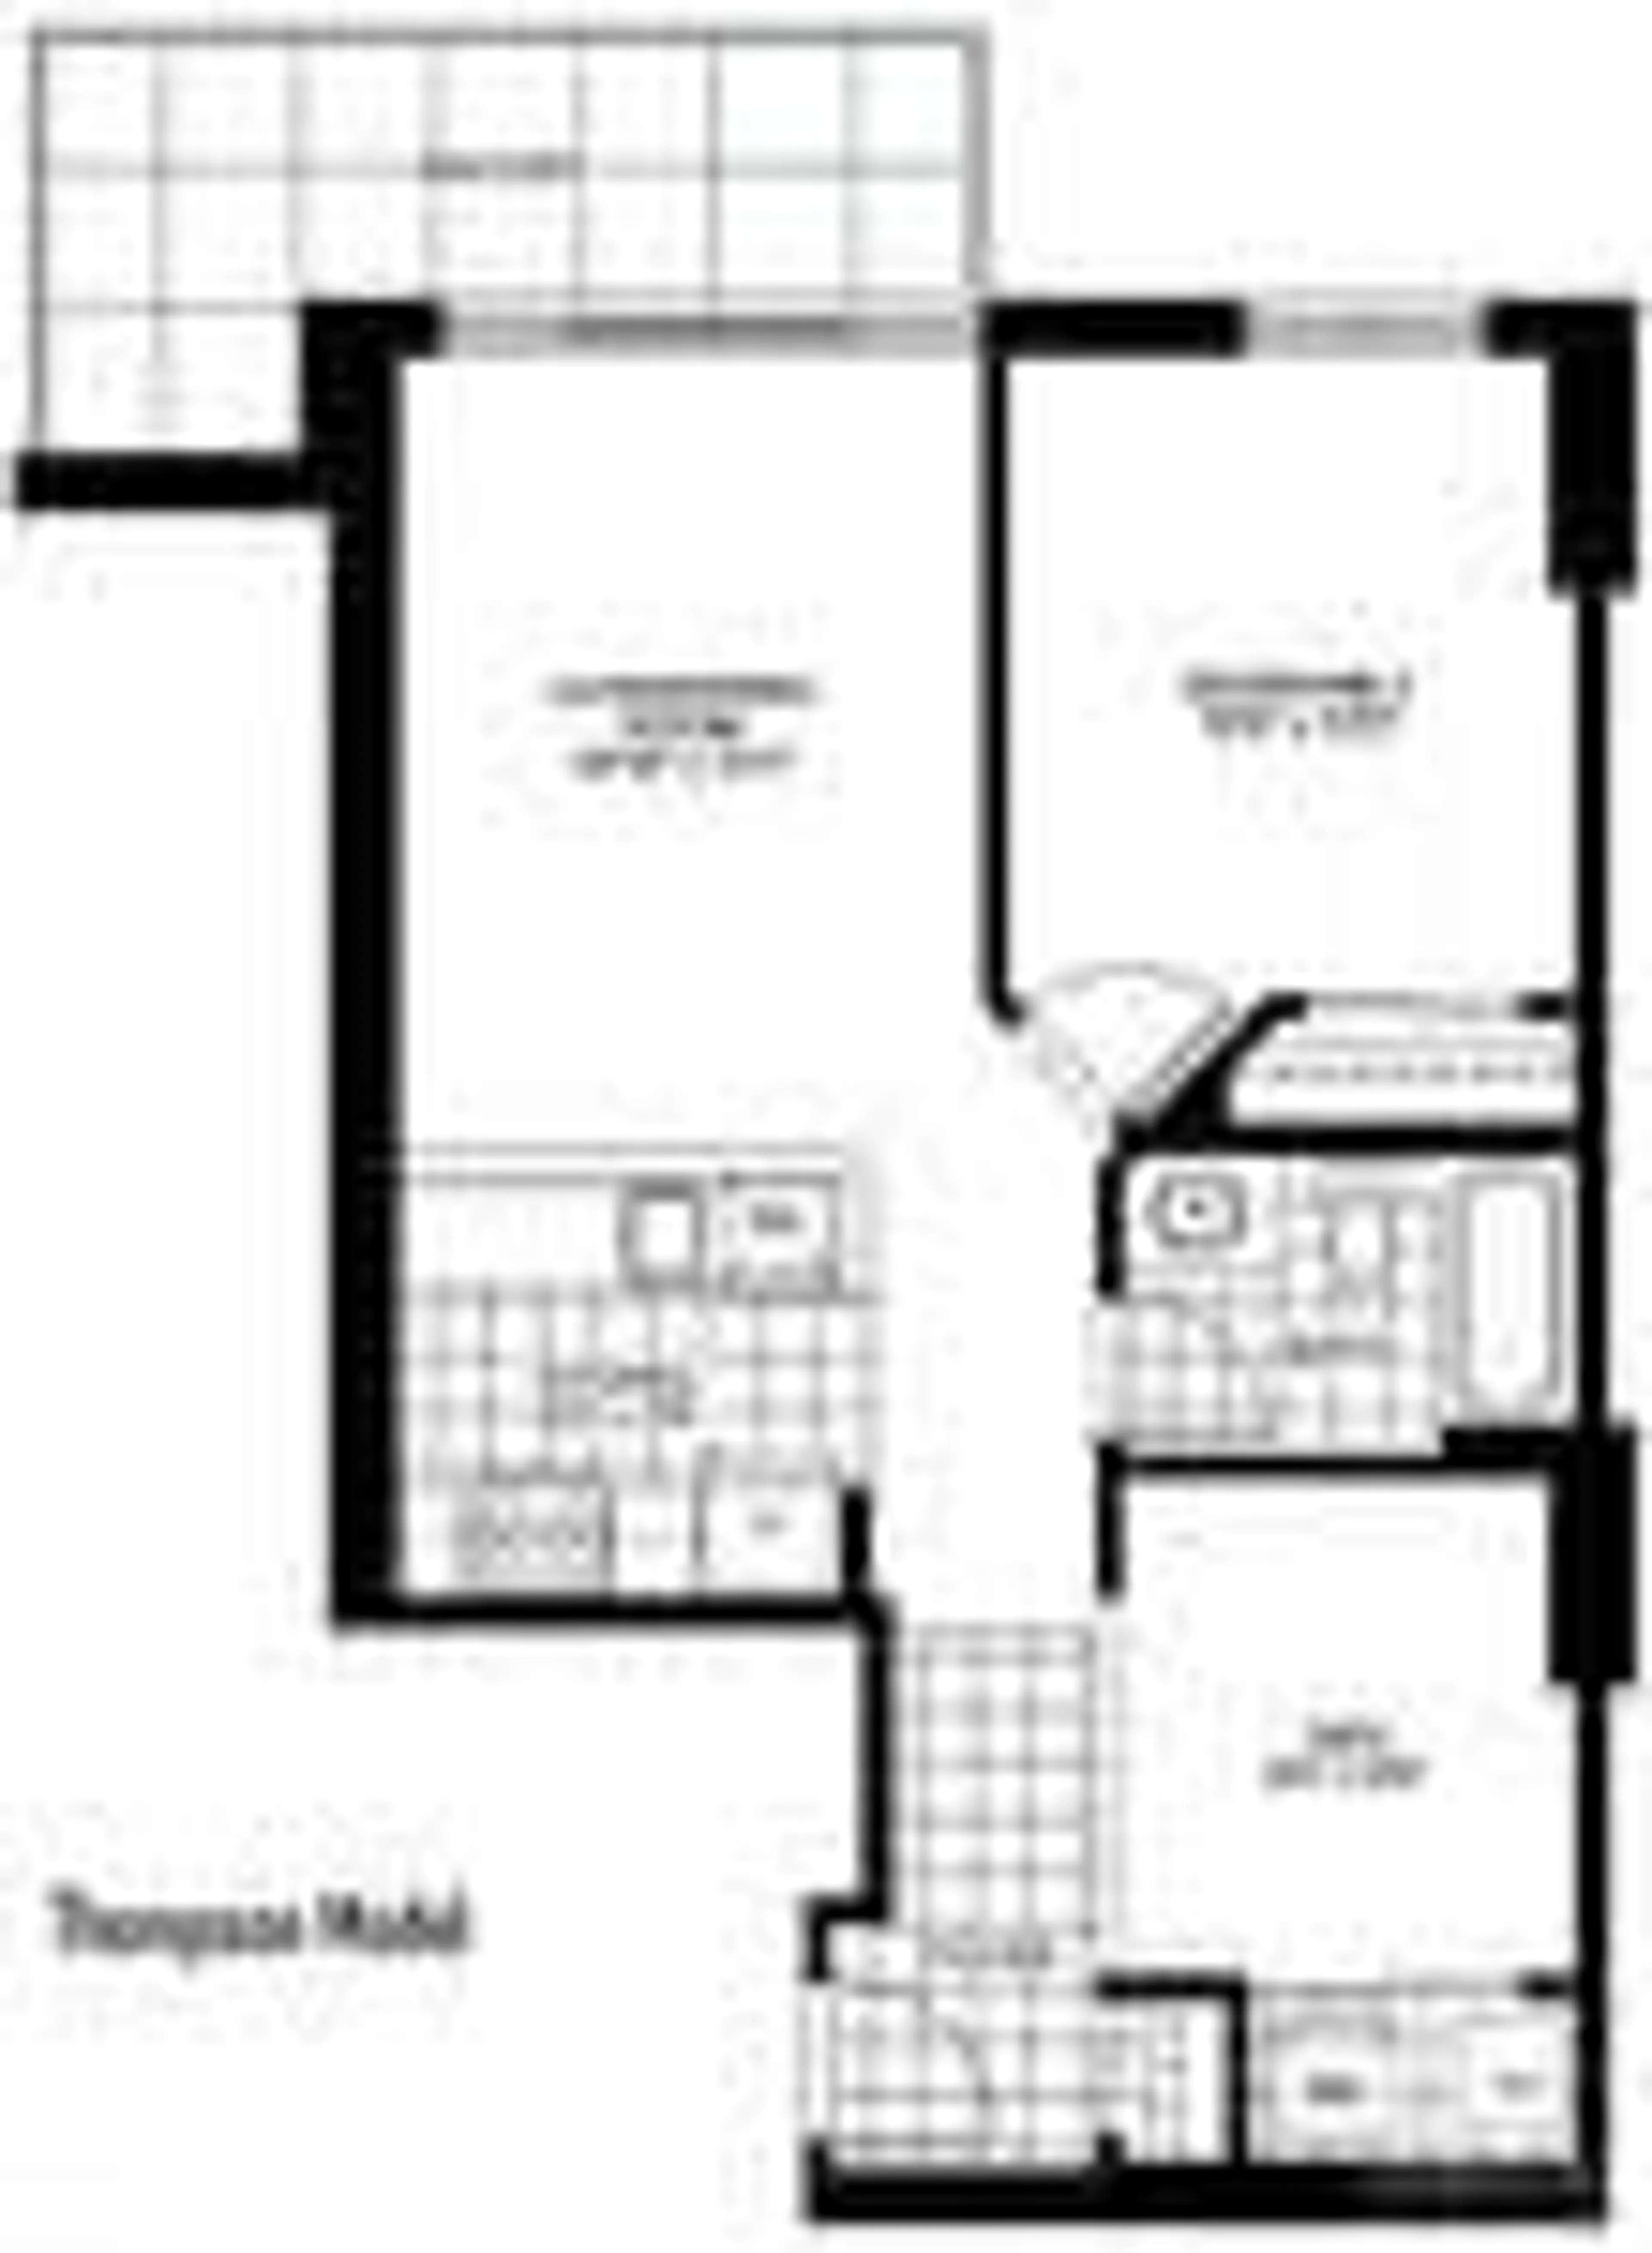 Floor plan for 70 LANDRY St #1606, Ottawa Ontario K1L 0A8